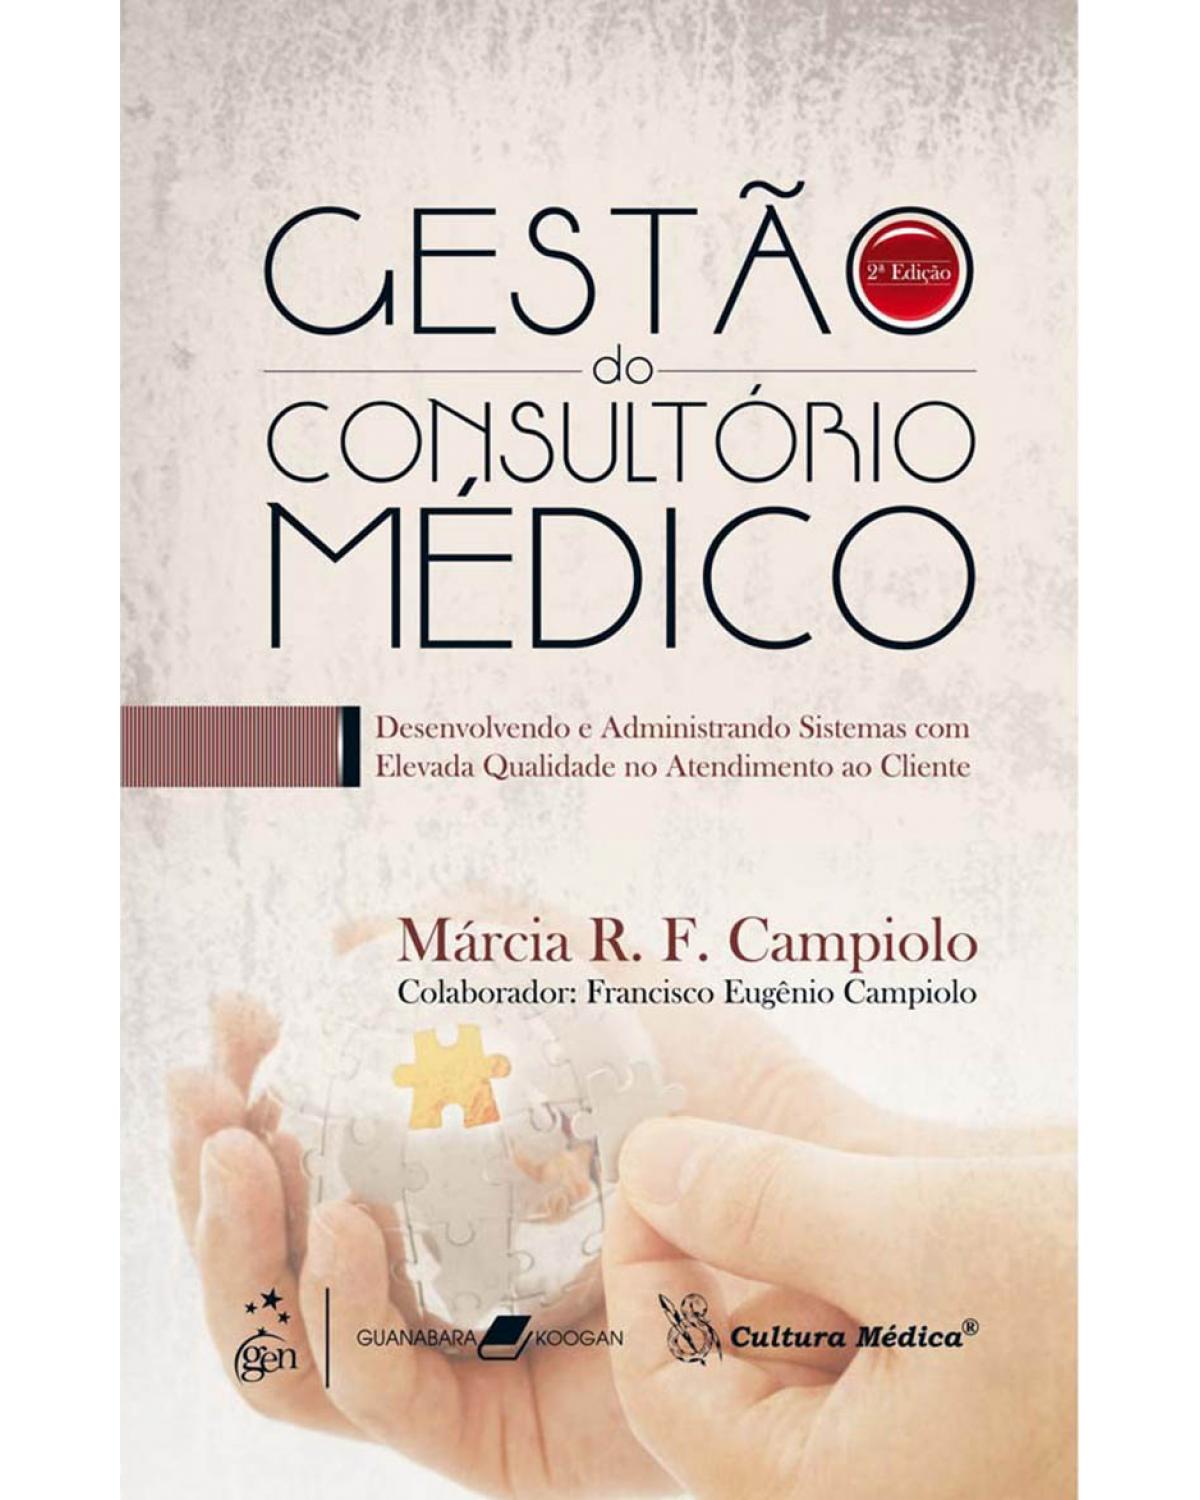 Gestão do consultório médico - Desenvolvendo e administrando sistemas com elevada qualidade no atendimento - 2ª Edição | 2009